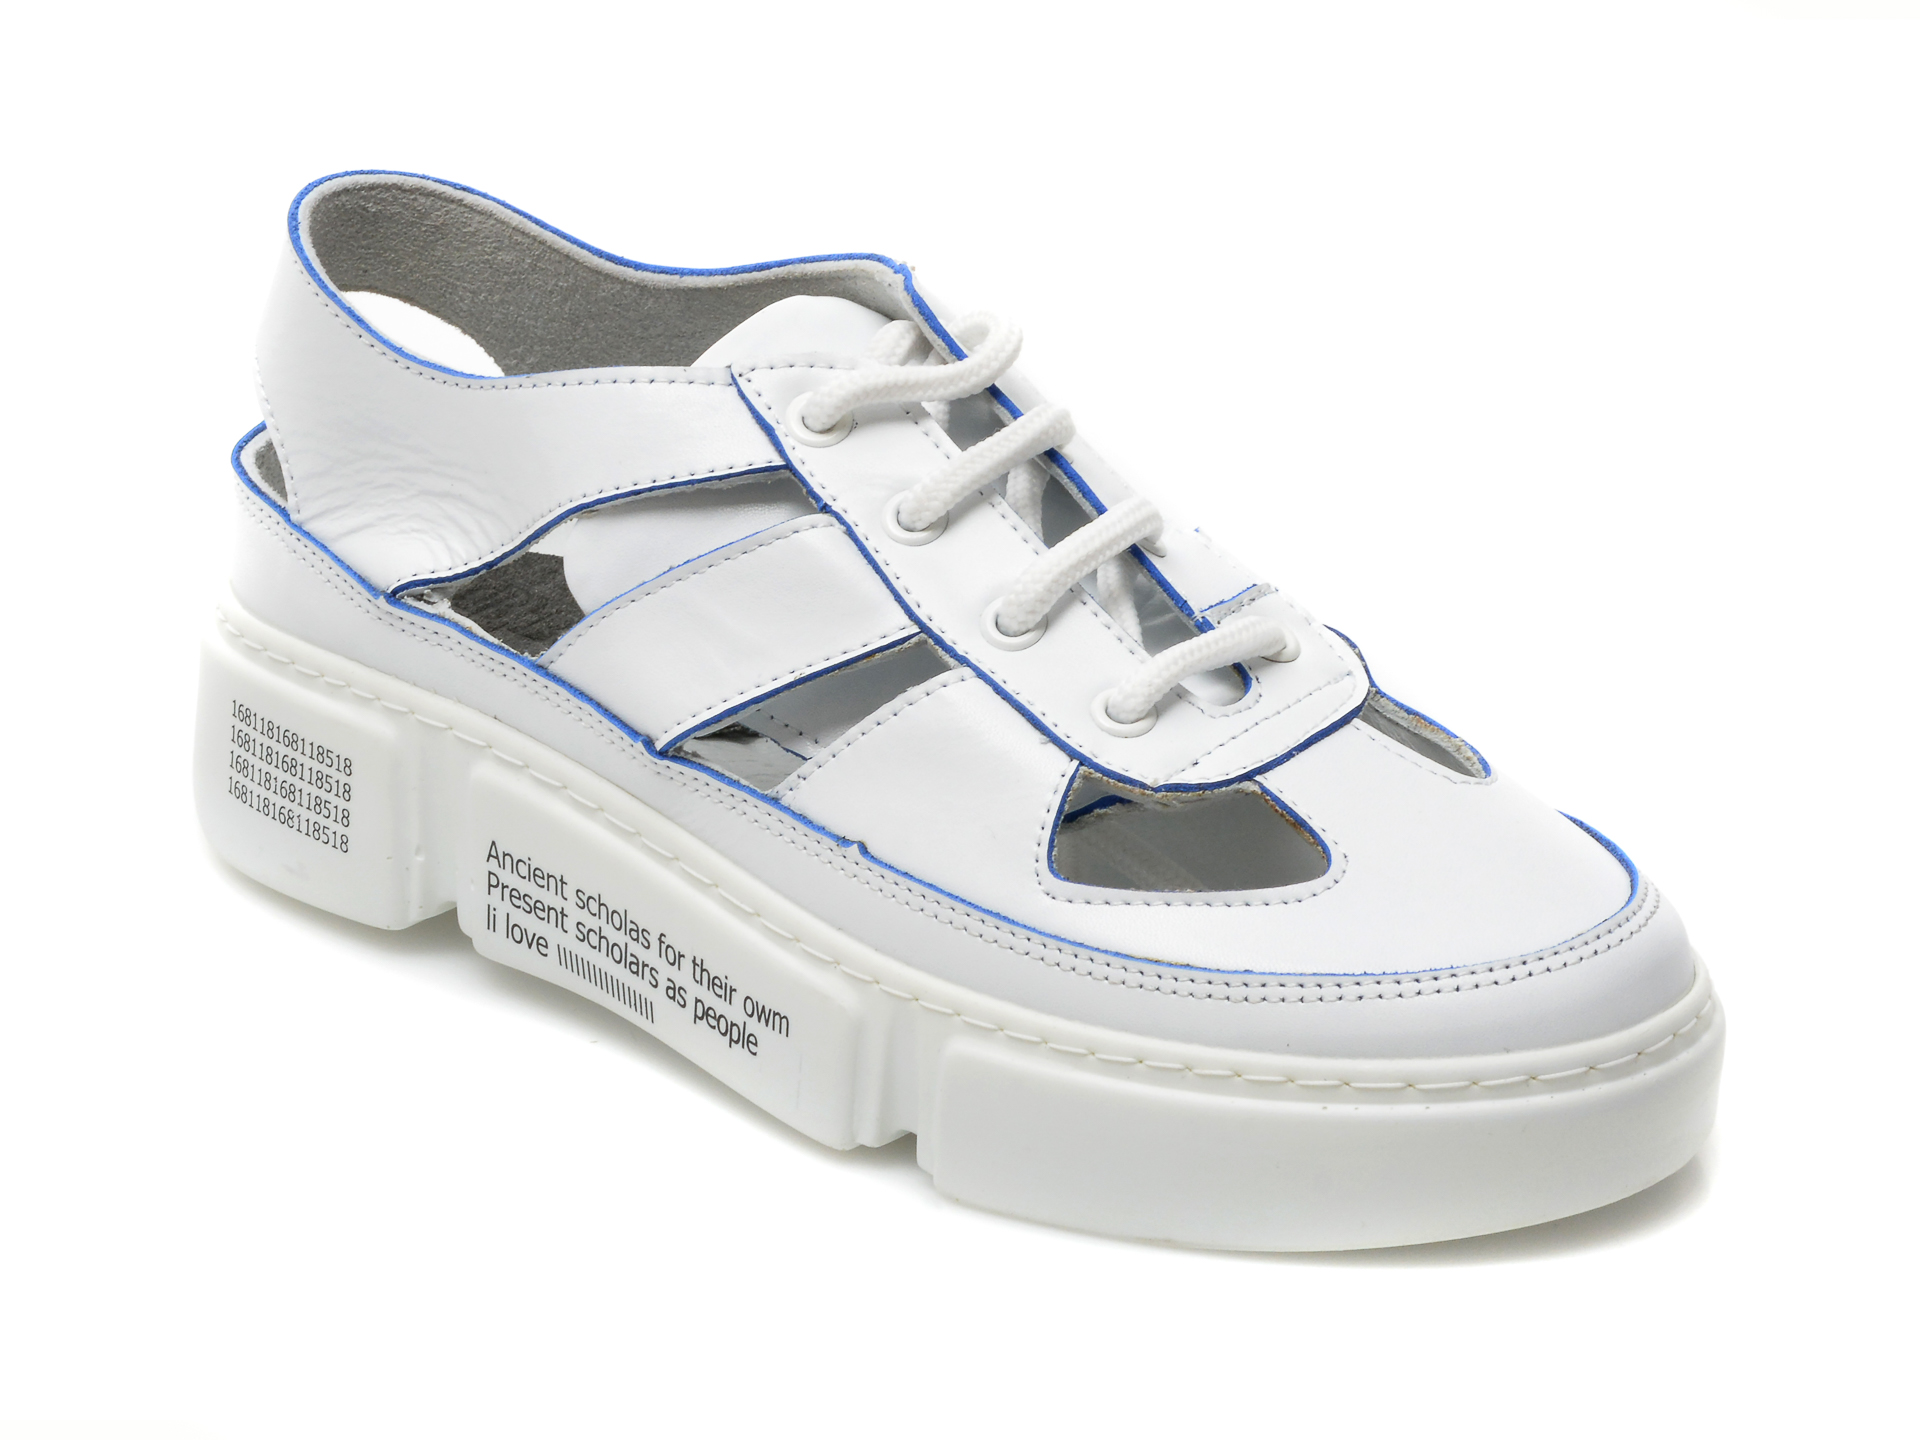 Pantofi BESTELLO albi, 115, din piele naturala BESTELLO BESTELLO